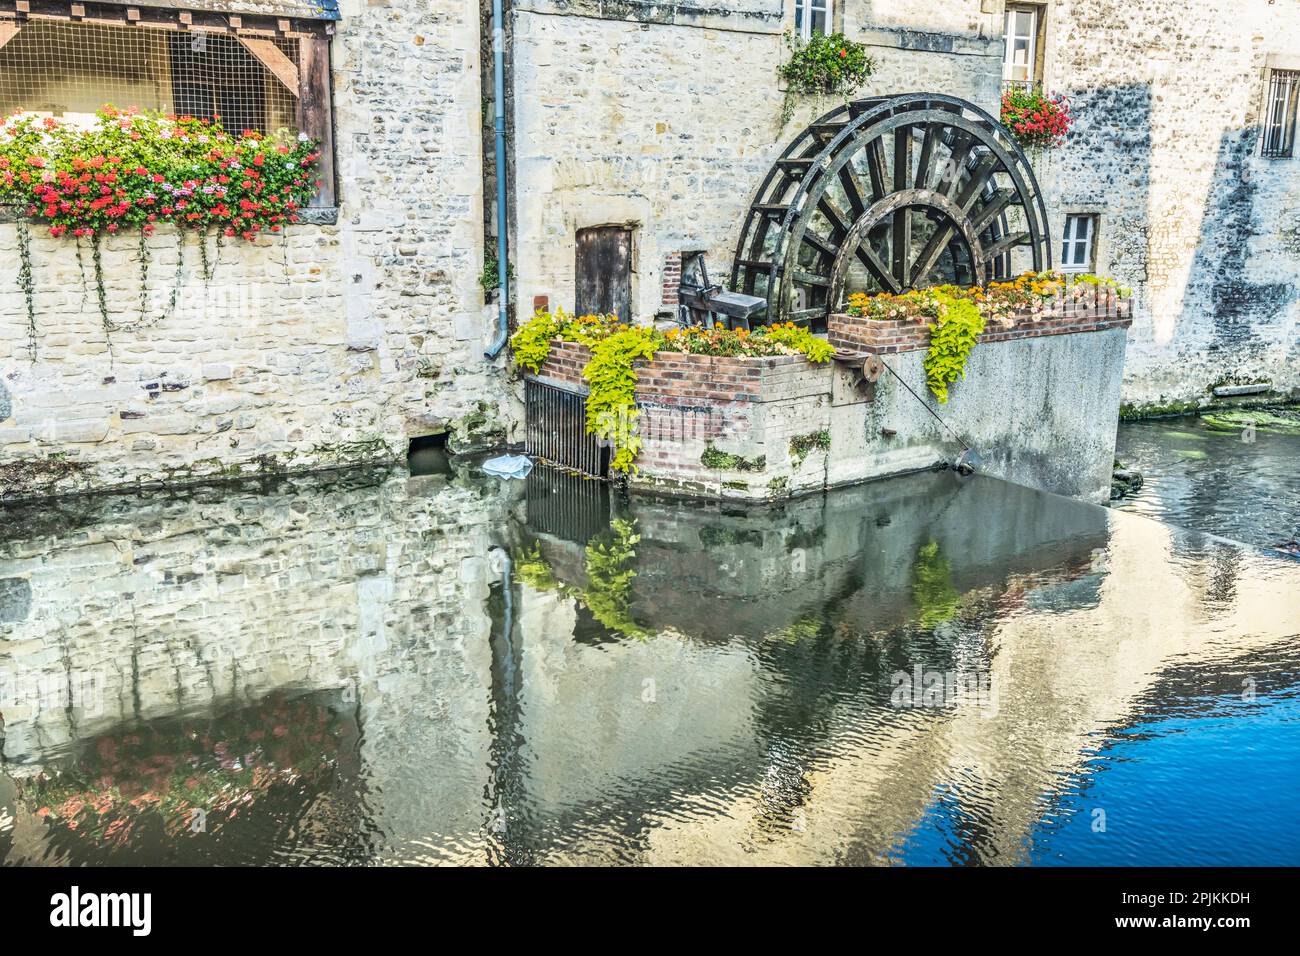 Farbenfrohe alte Gebäude, Aure River Reflection, Bayeux, Normandie, Frankreich. Bayeux gründete das 1. Jahrhundert v. Chr., die erste Stadt wurde nach dem D-Day befreit Stockfoto